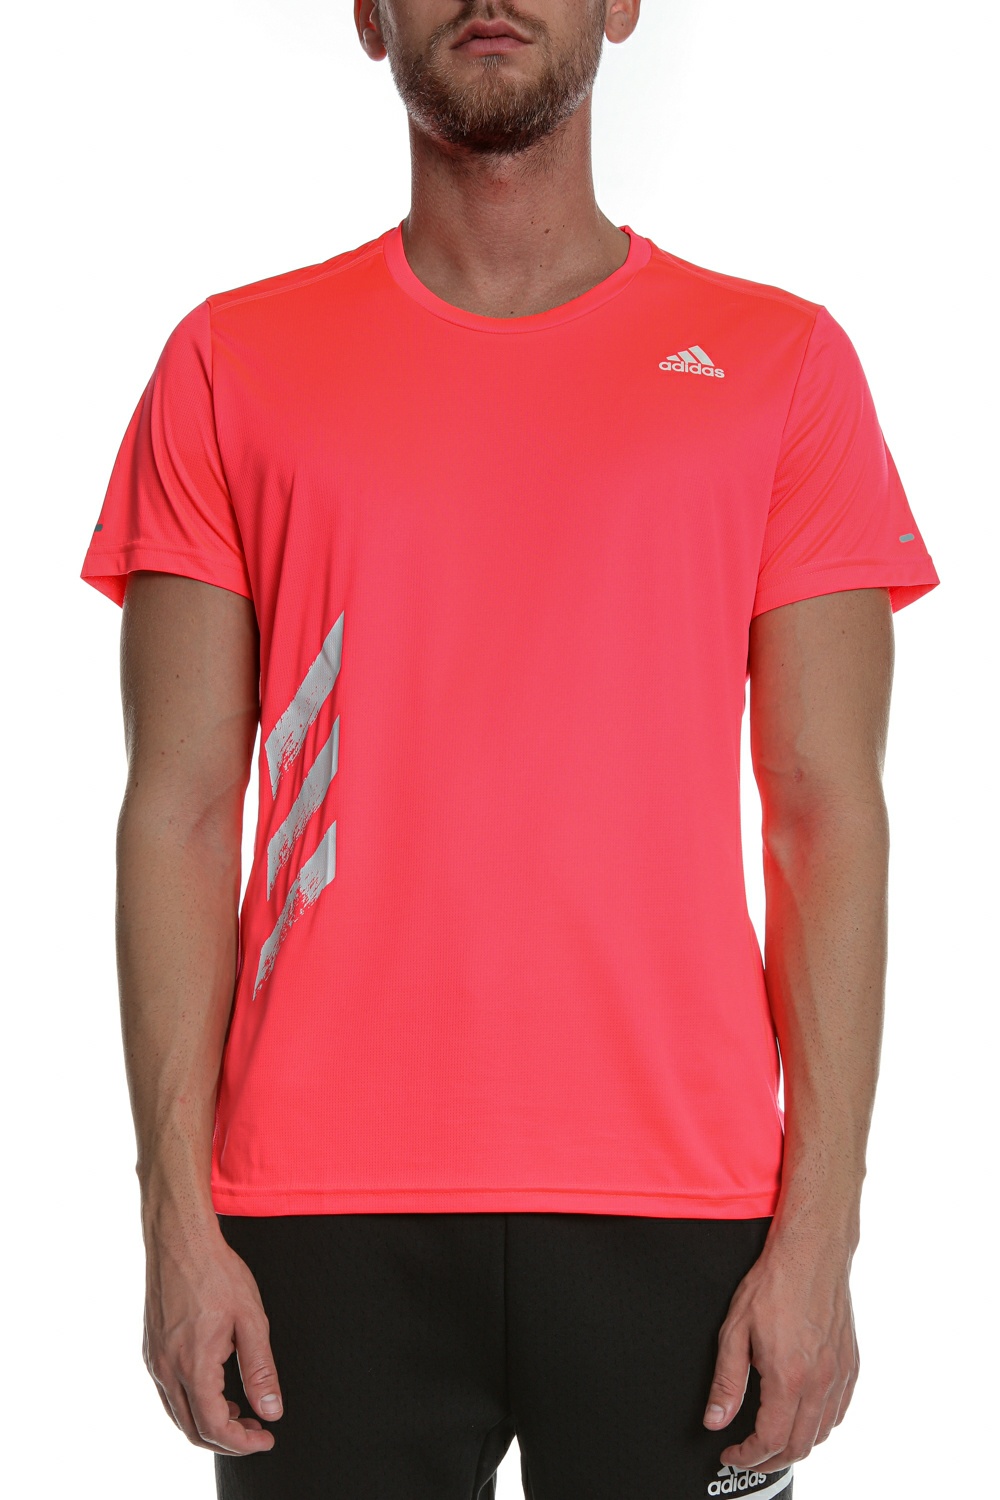 Ανδρικά/Ρούχα/Αθλητικά/T-shirt adidas Originals - Ανδρική κοντομάνικη μπλούζα RUN IT TEE 3S ροζ